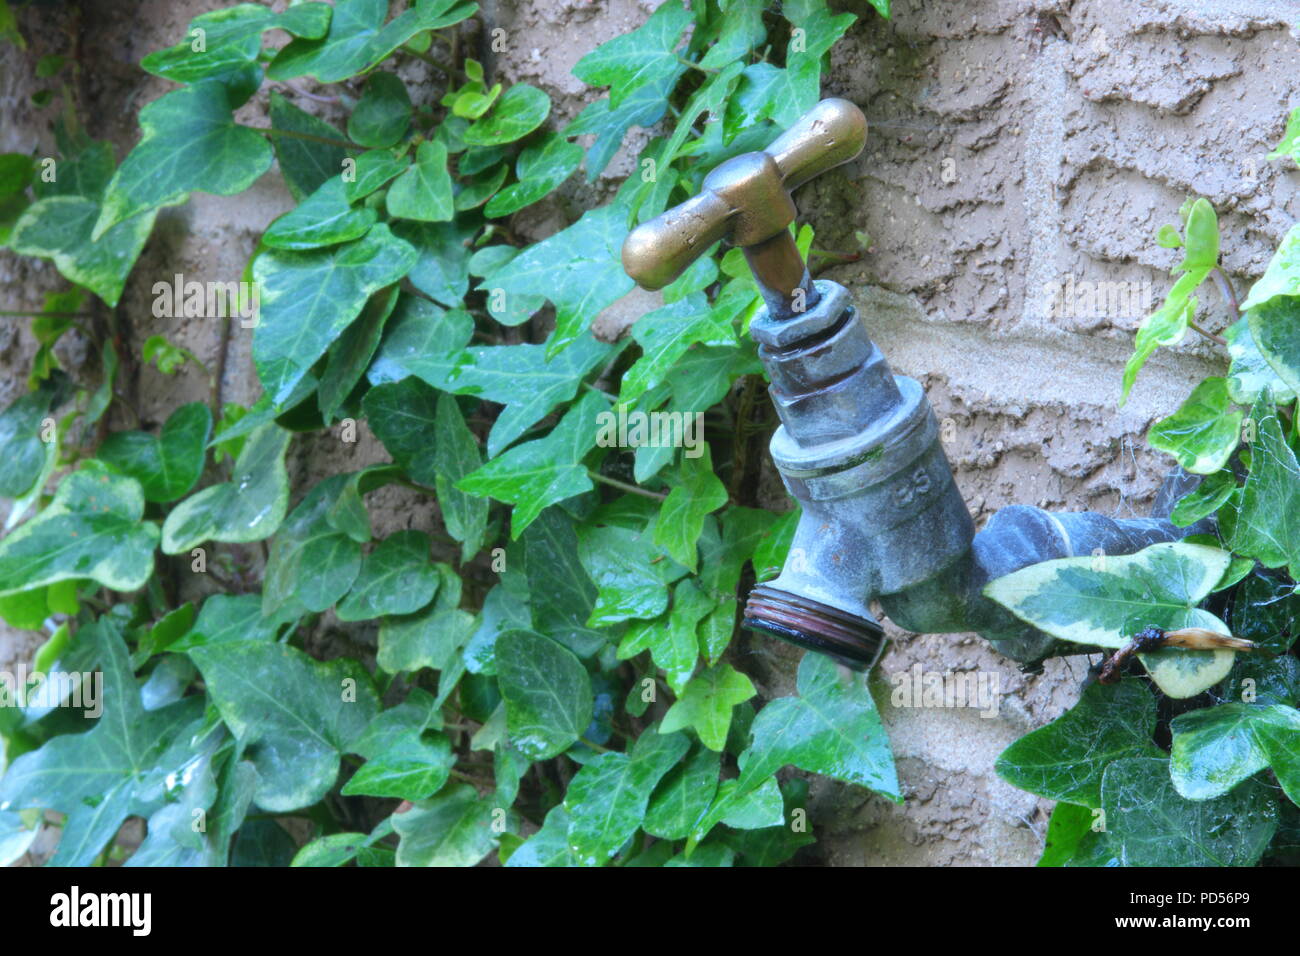 An outdoor garden tap run dry Stock Photo